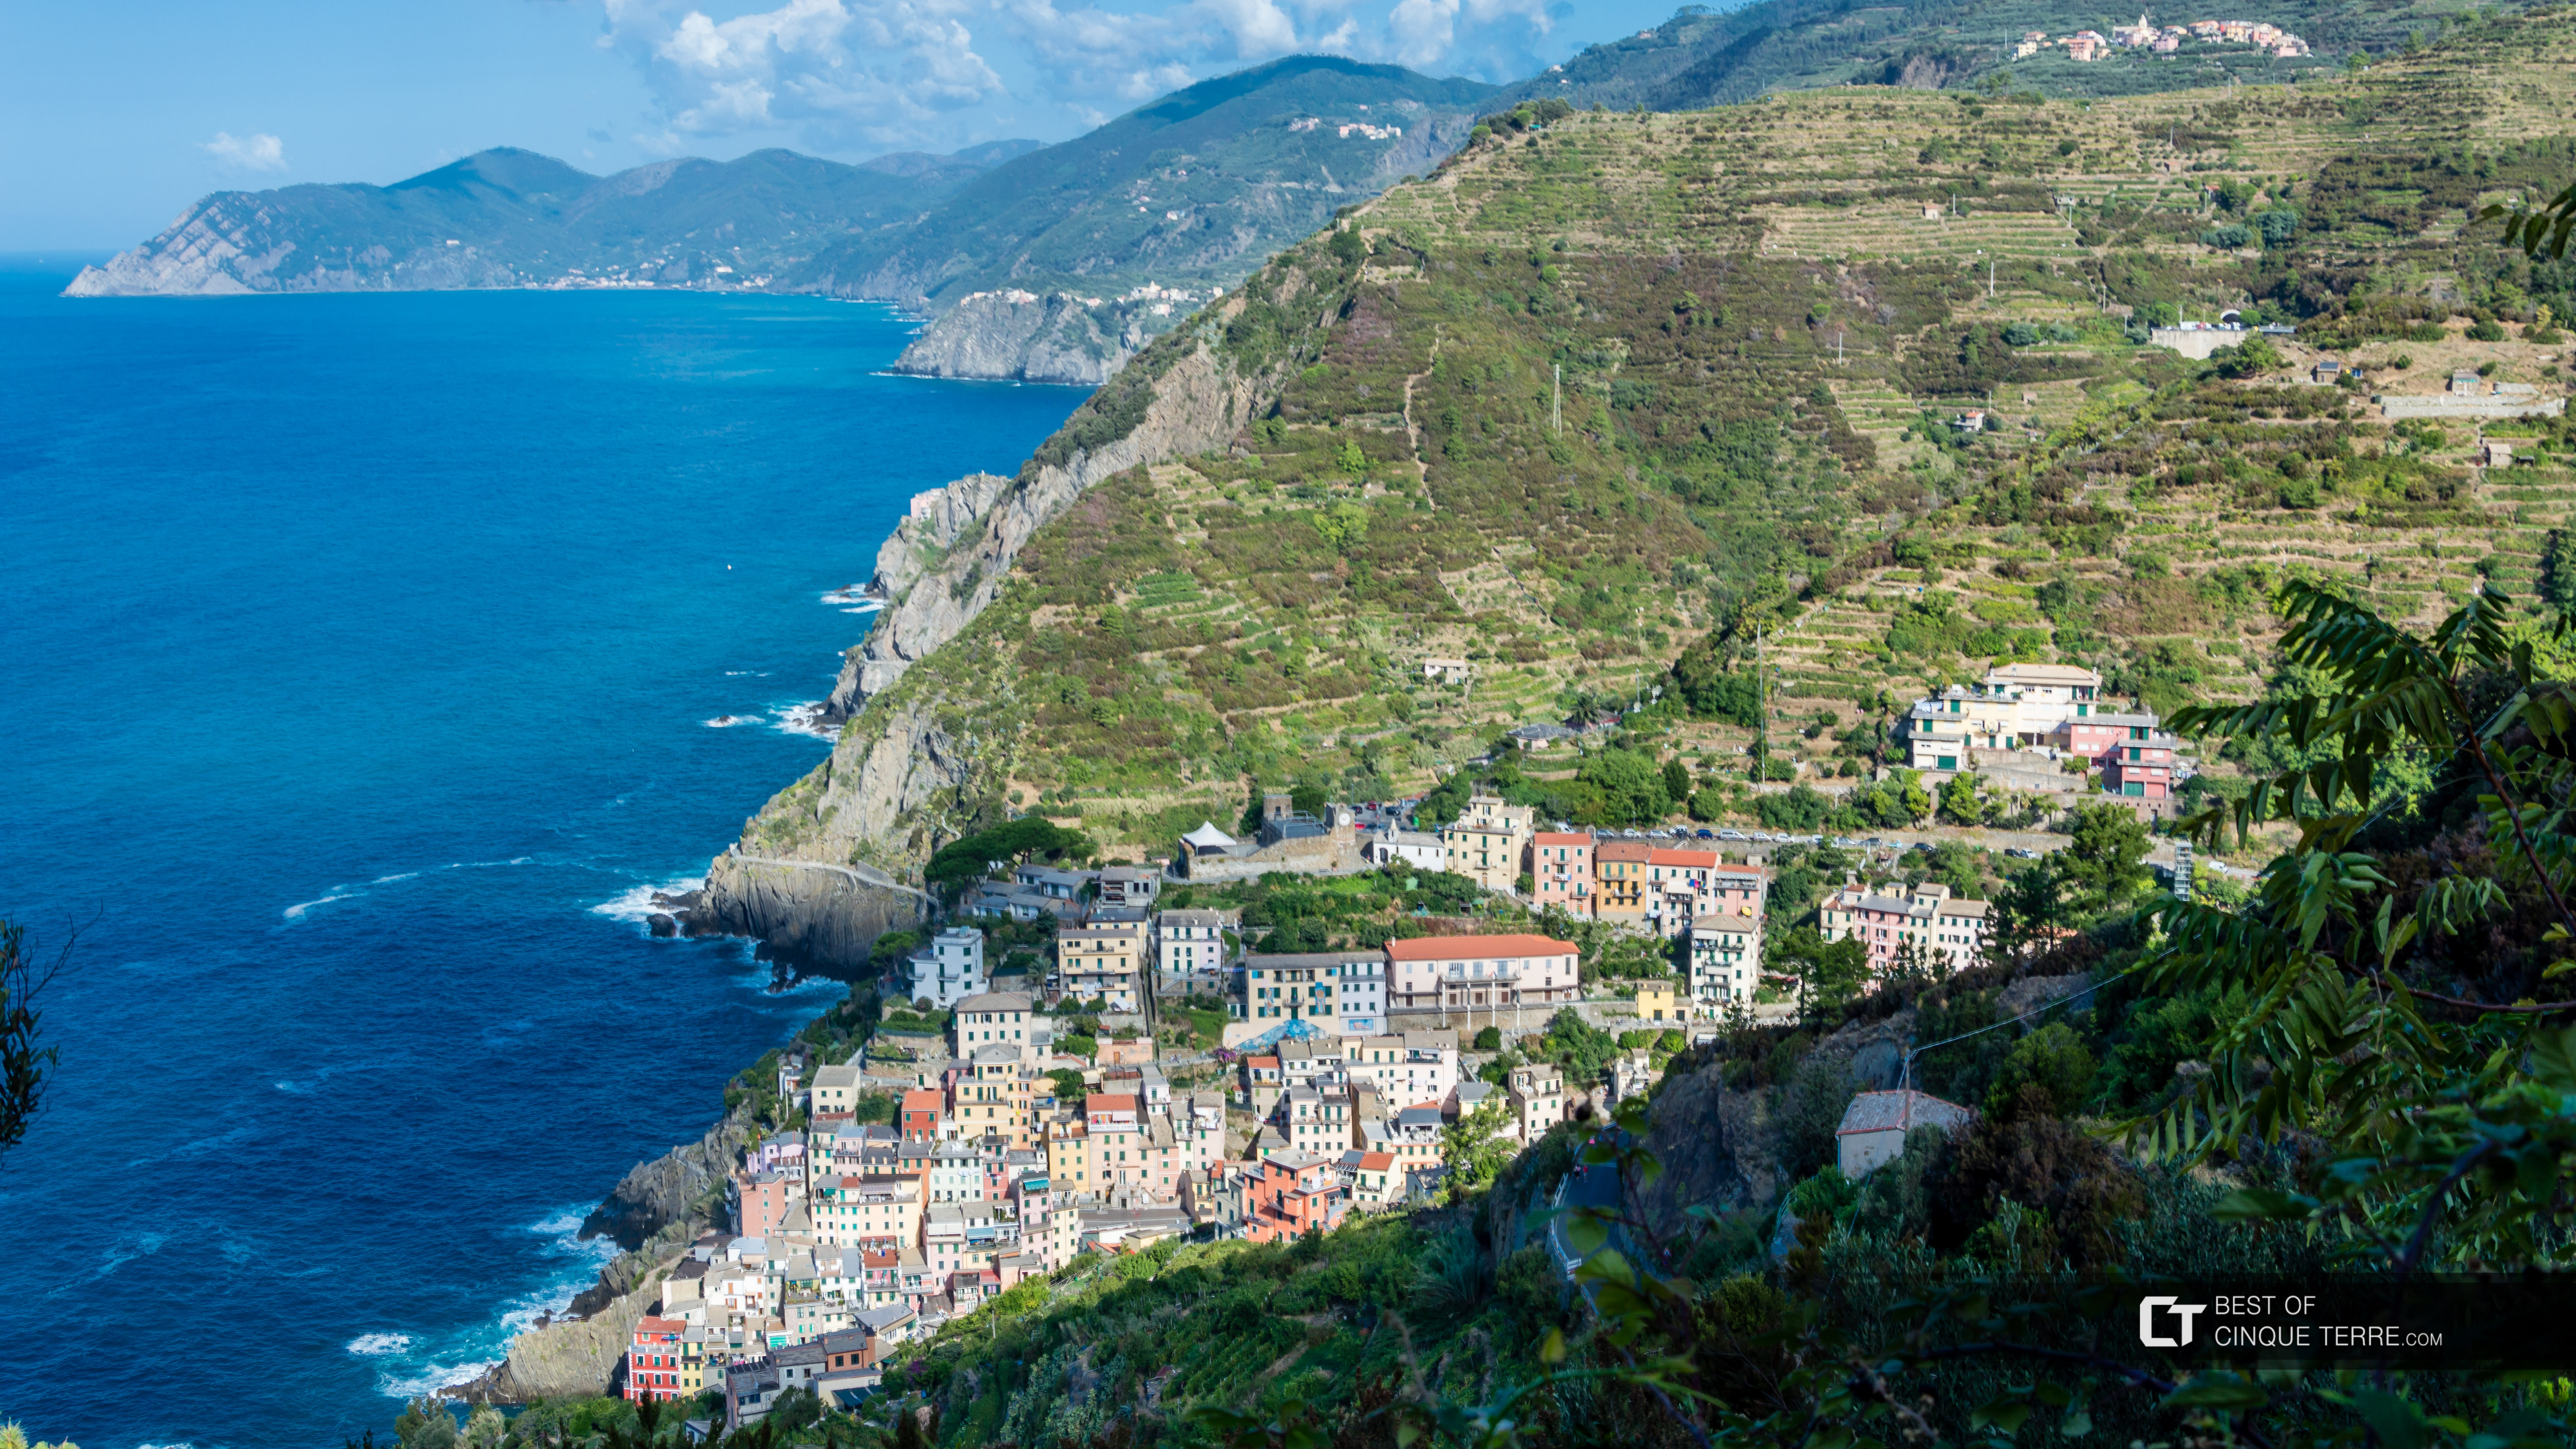 Blick auf das Dorf vom Wanderweg nach der Wallfahrtskirche Montenero, Riomaggiore, Cinque Terre, Italien